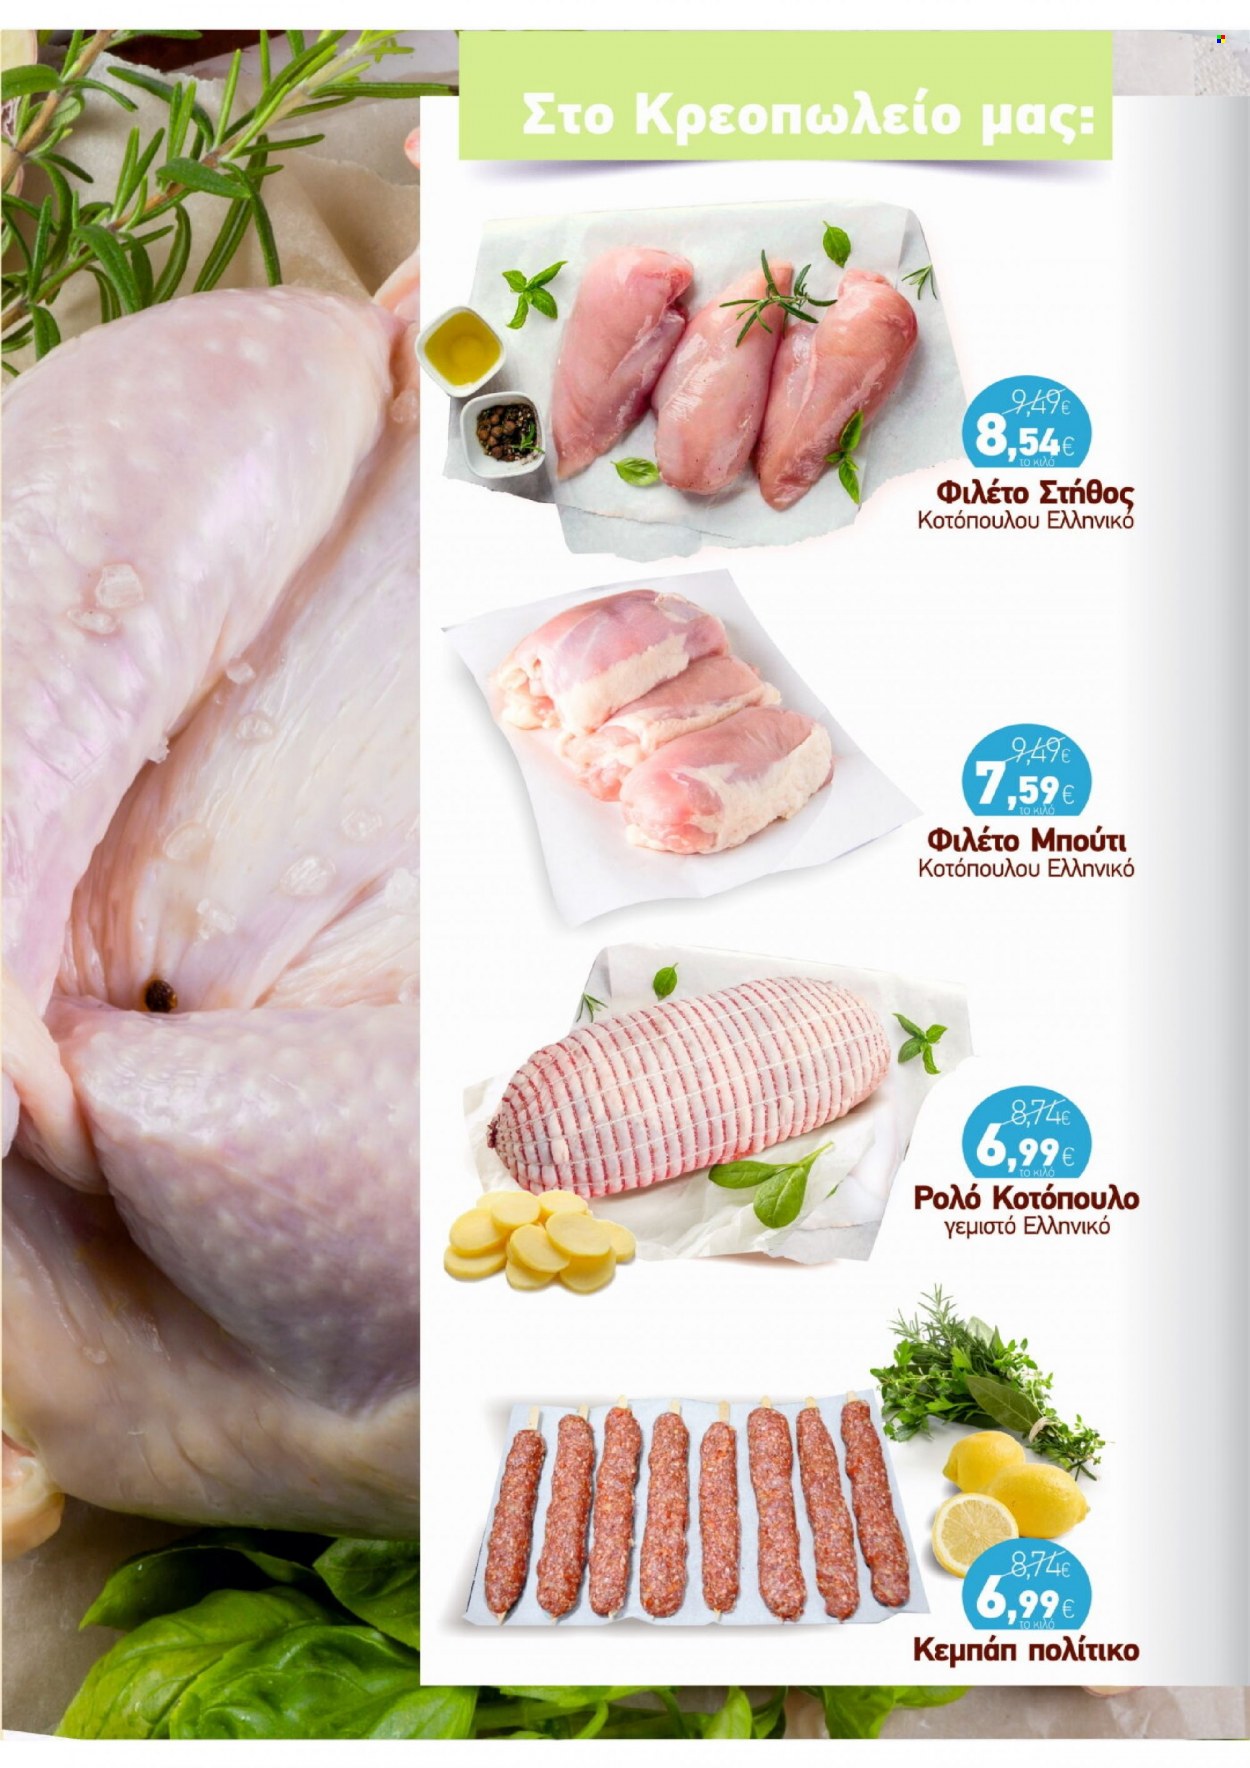 Φυλλάδια ΑΦΡΟΔΙΤΗ - 11.05.2022 - 31.05.2022 - Εκπτωτικά προϊόντα - κοτόπουλο, μπούτι κοτόπουλου, στηθος κοτοπουλου, φιλέτο στήθος κοτόπουλου, ρολό. Σελίδα 2.